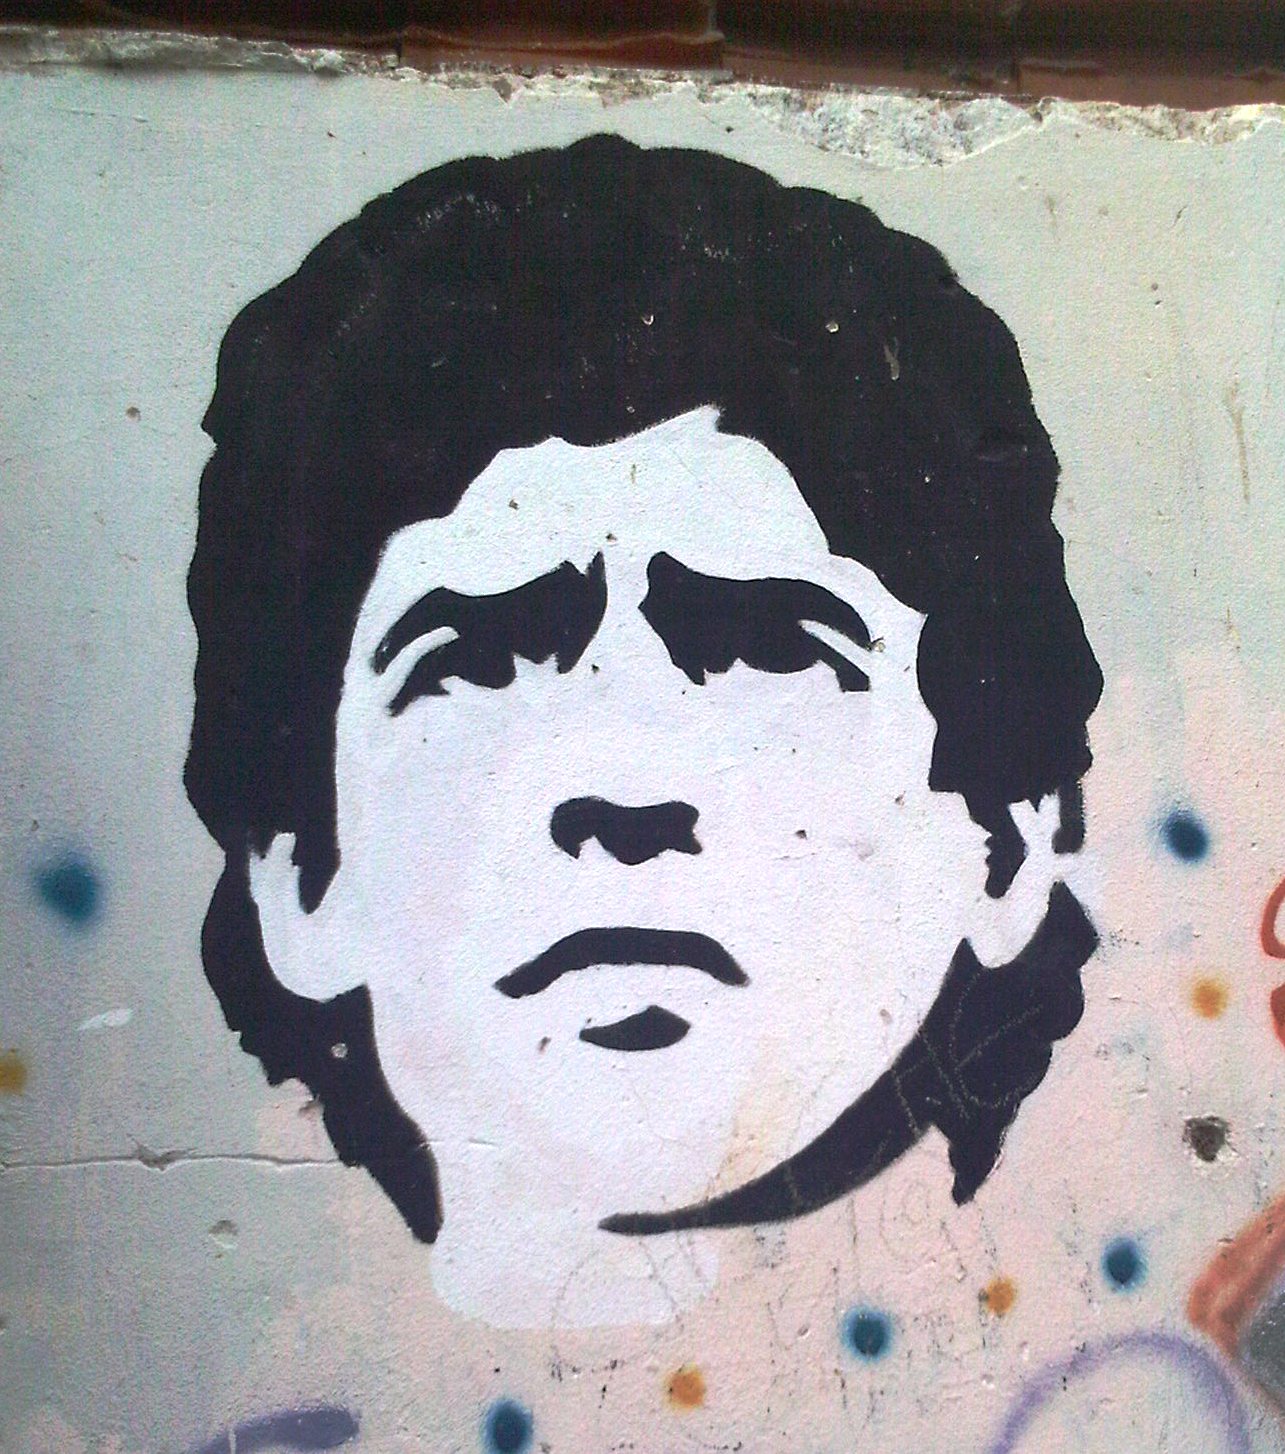 Como deberia ser la bandera argentina de Paz y de guerra? - Página 2 Maradona+stencil.jpg